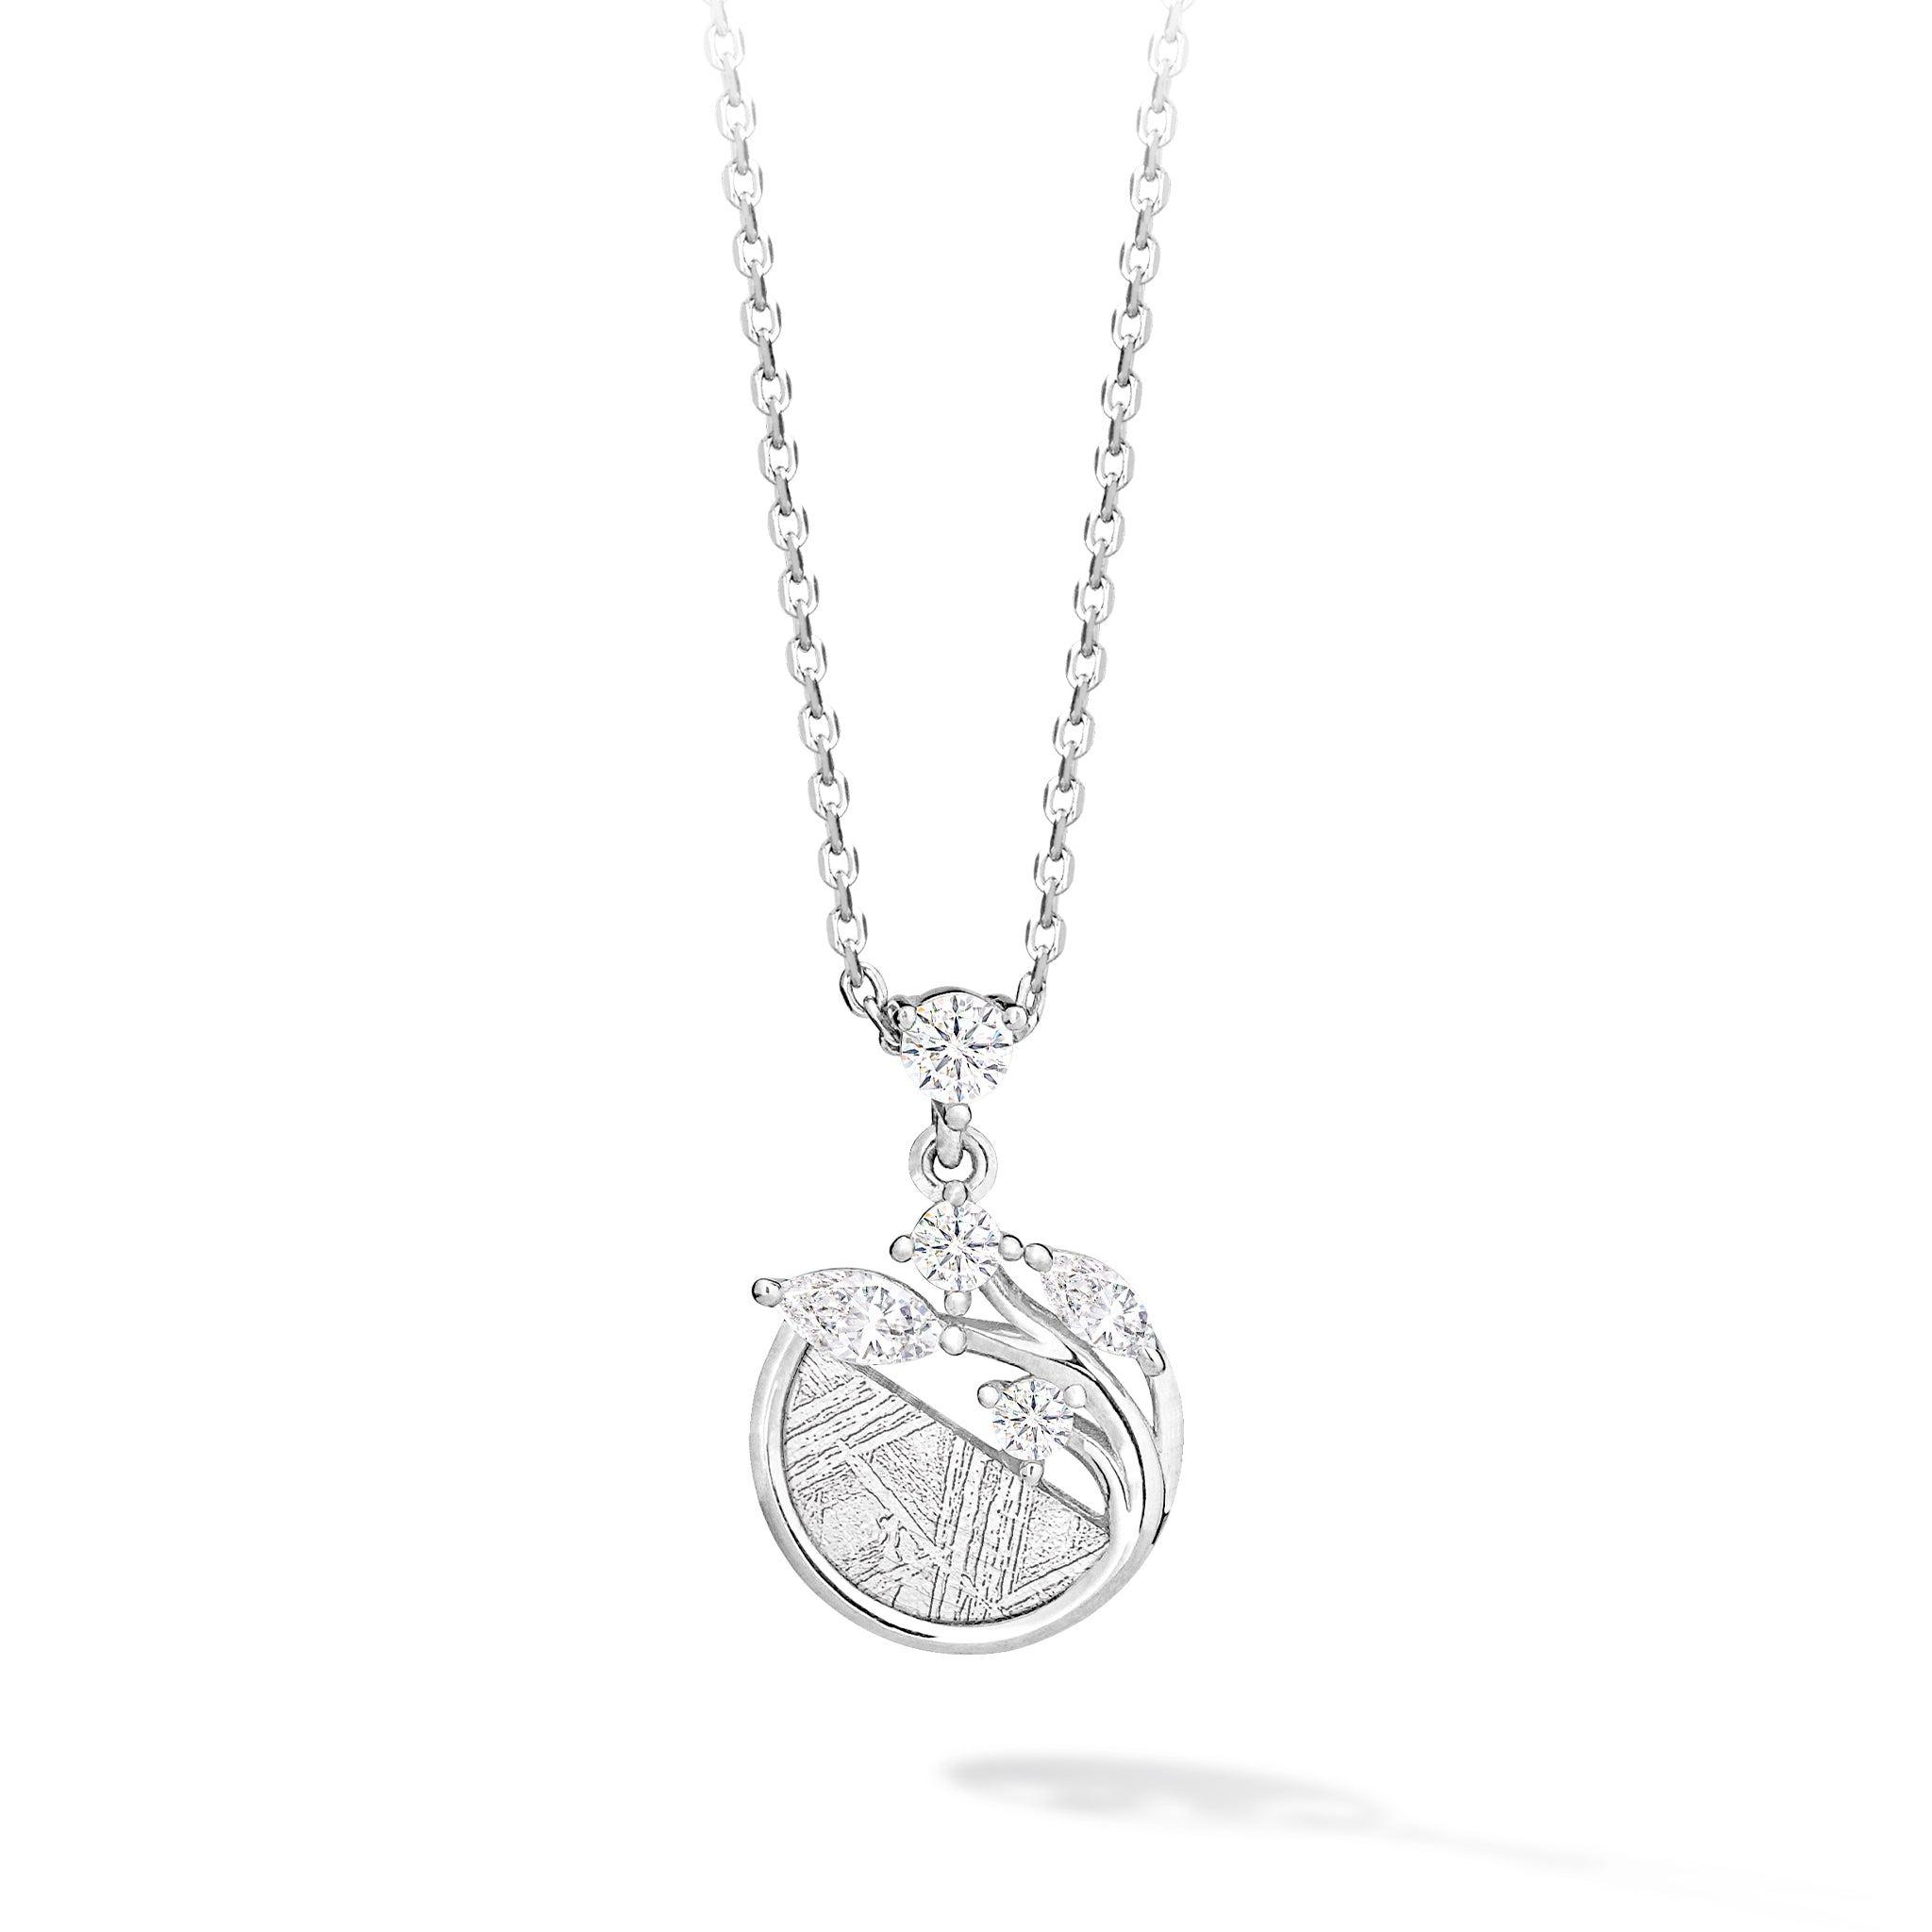 瑞典隕石女生純銀項鍊生命樹墜飾| AWNL品牌設計| 925鍍白金玫瑰金銀色 